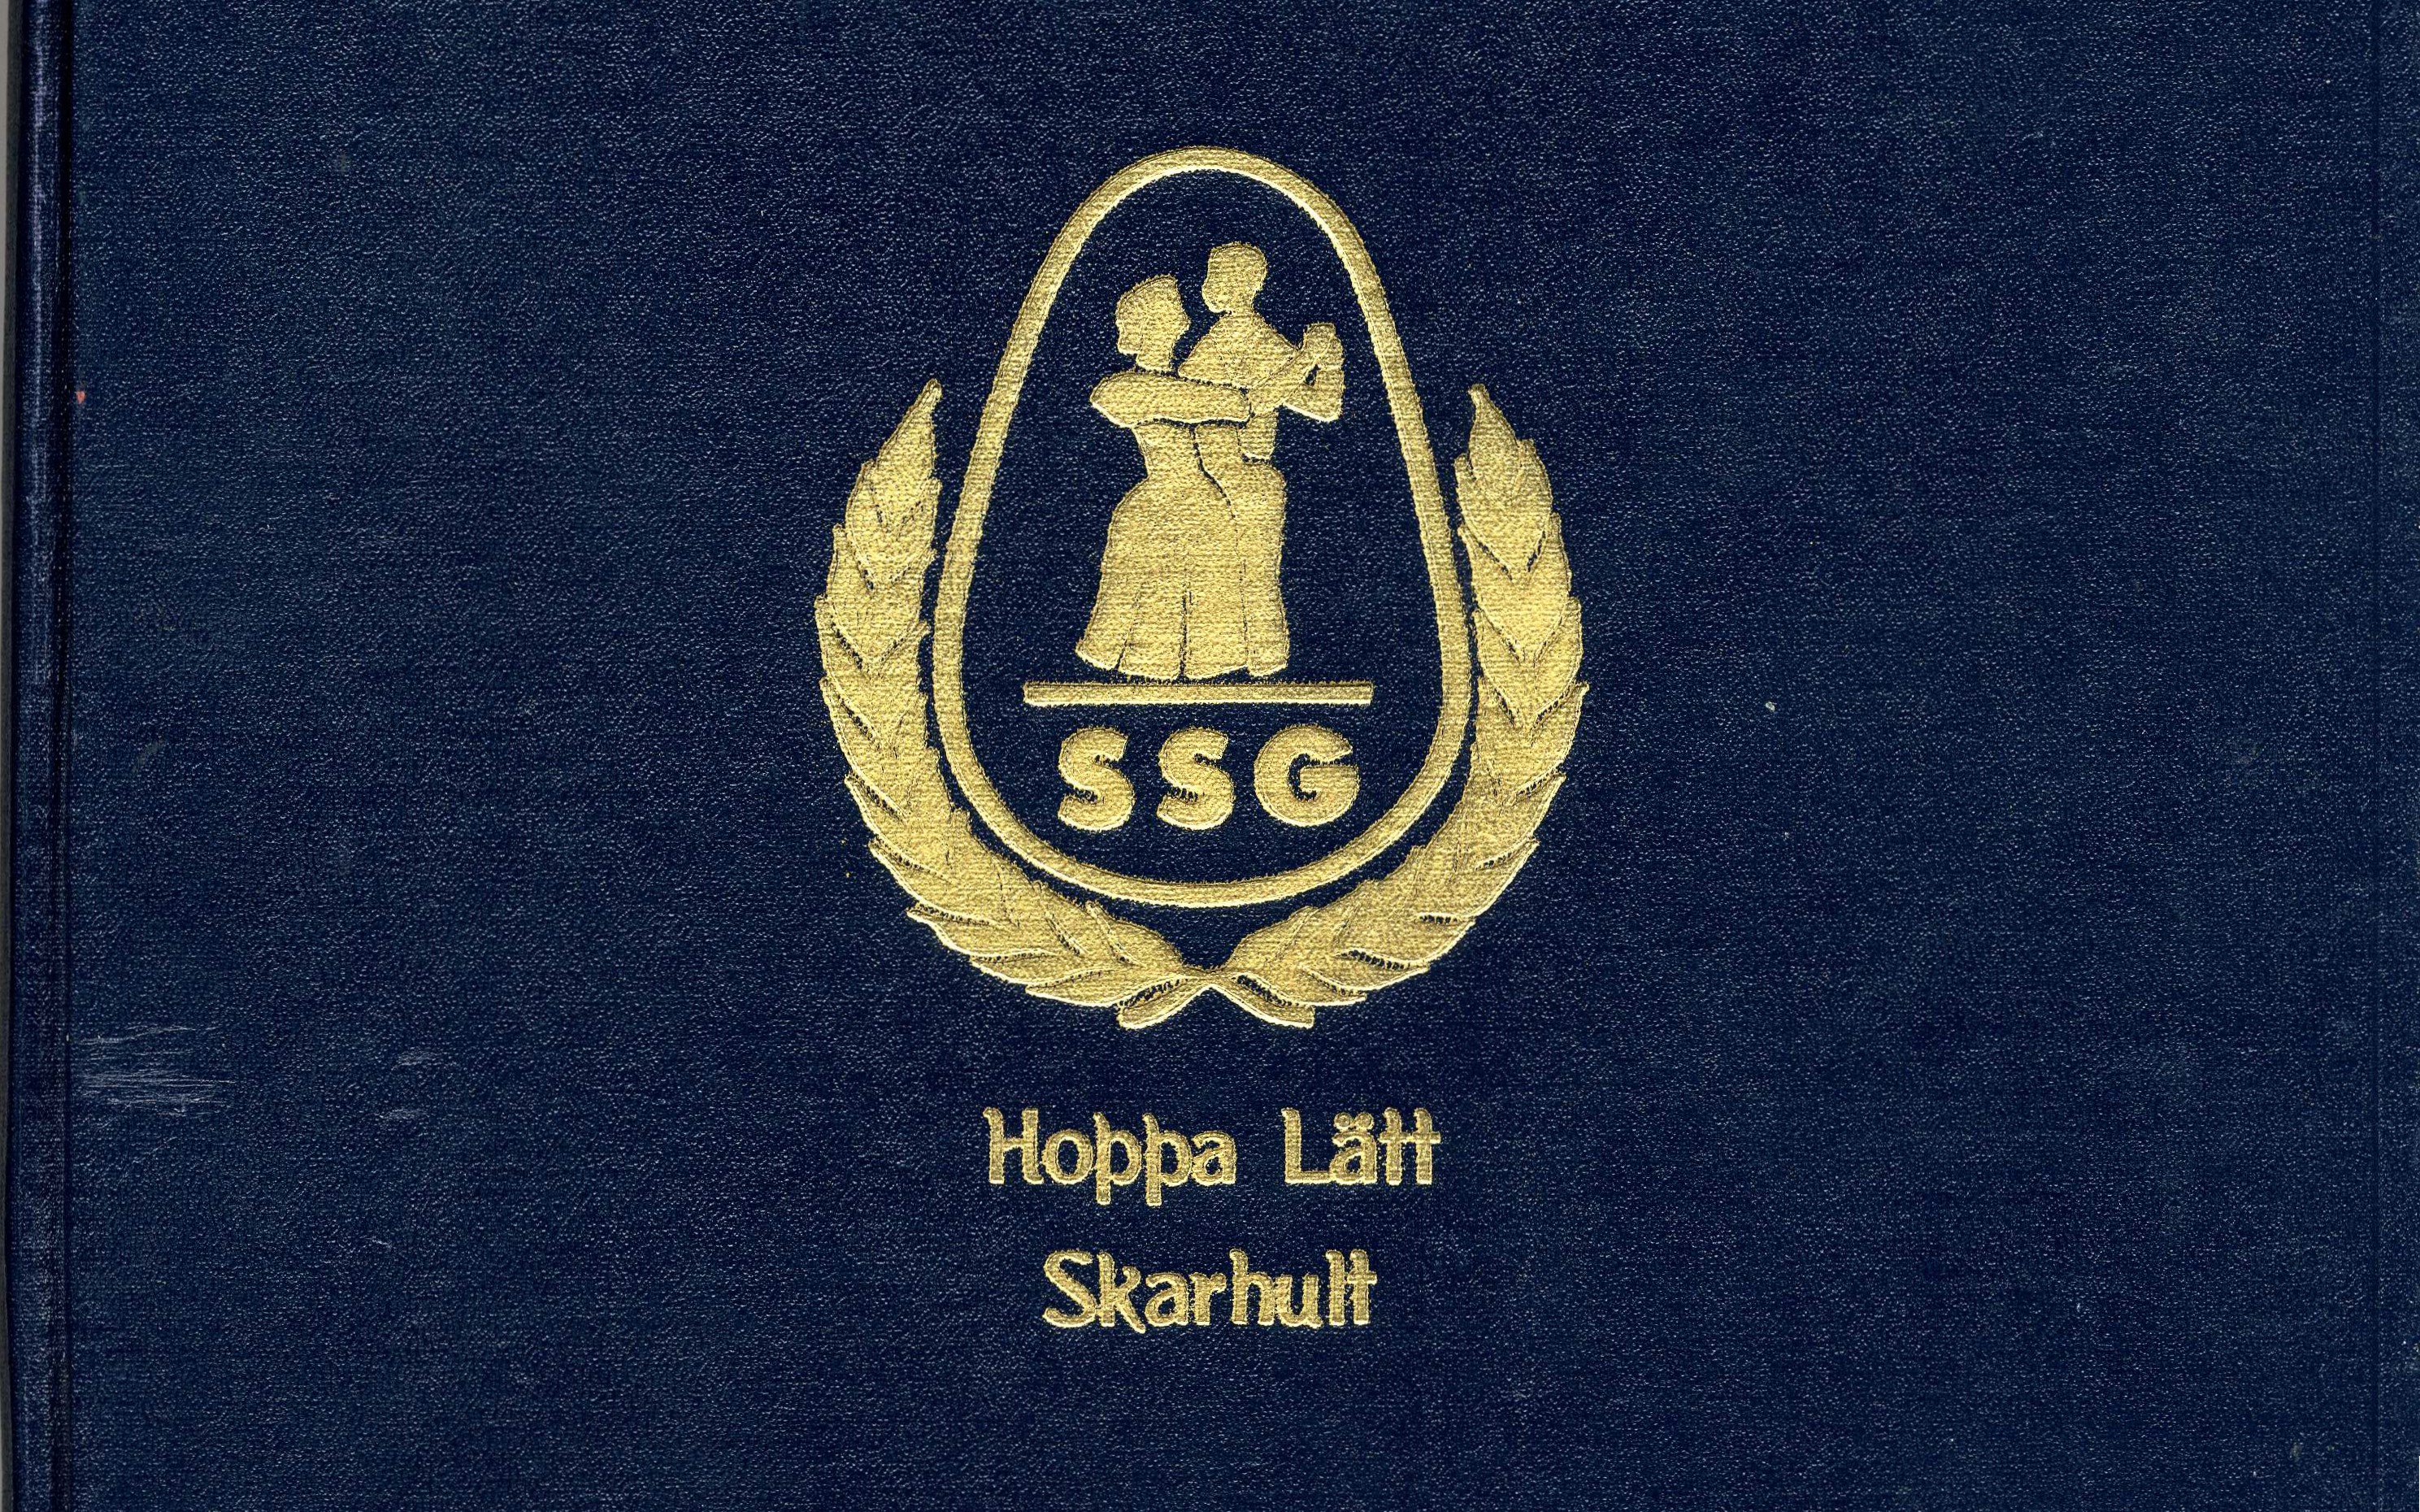 Del av pärm från Södra Sveriges Gammaldansdistrikt (SSG), med Skarhults Gammaldansförening Hoppa lätts emblem. 